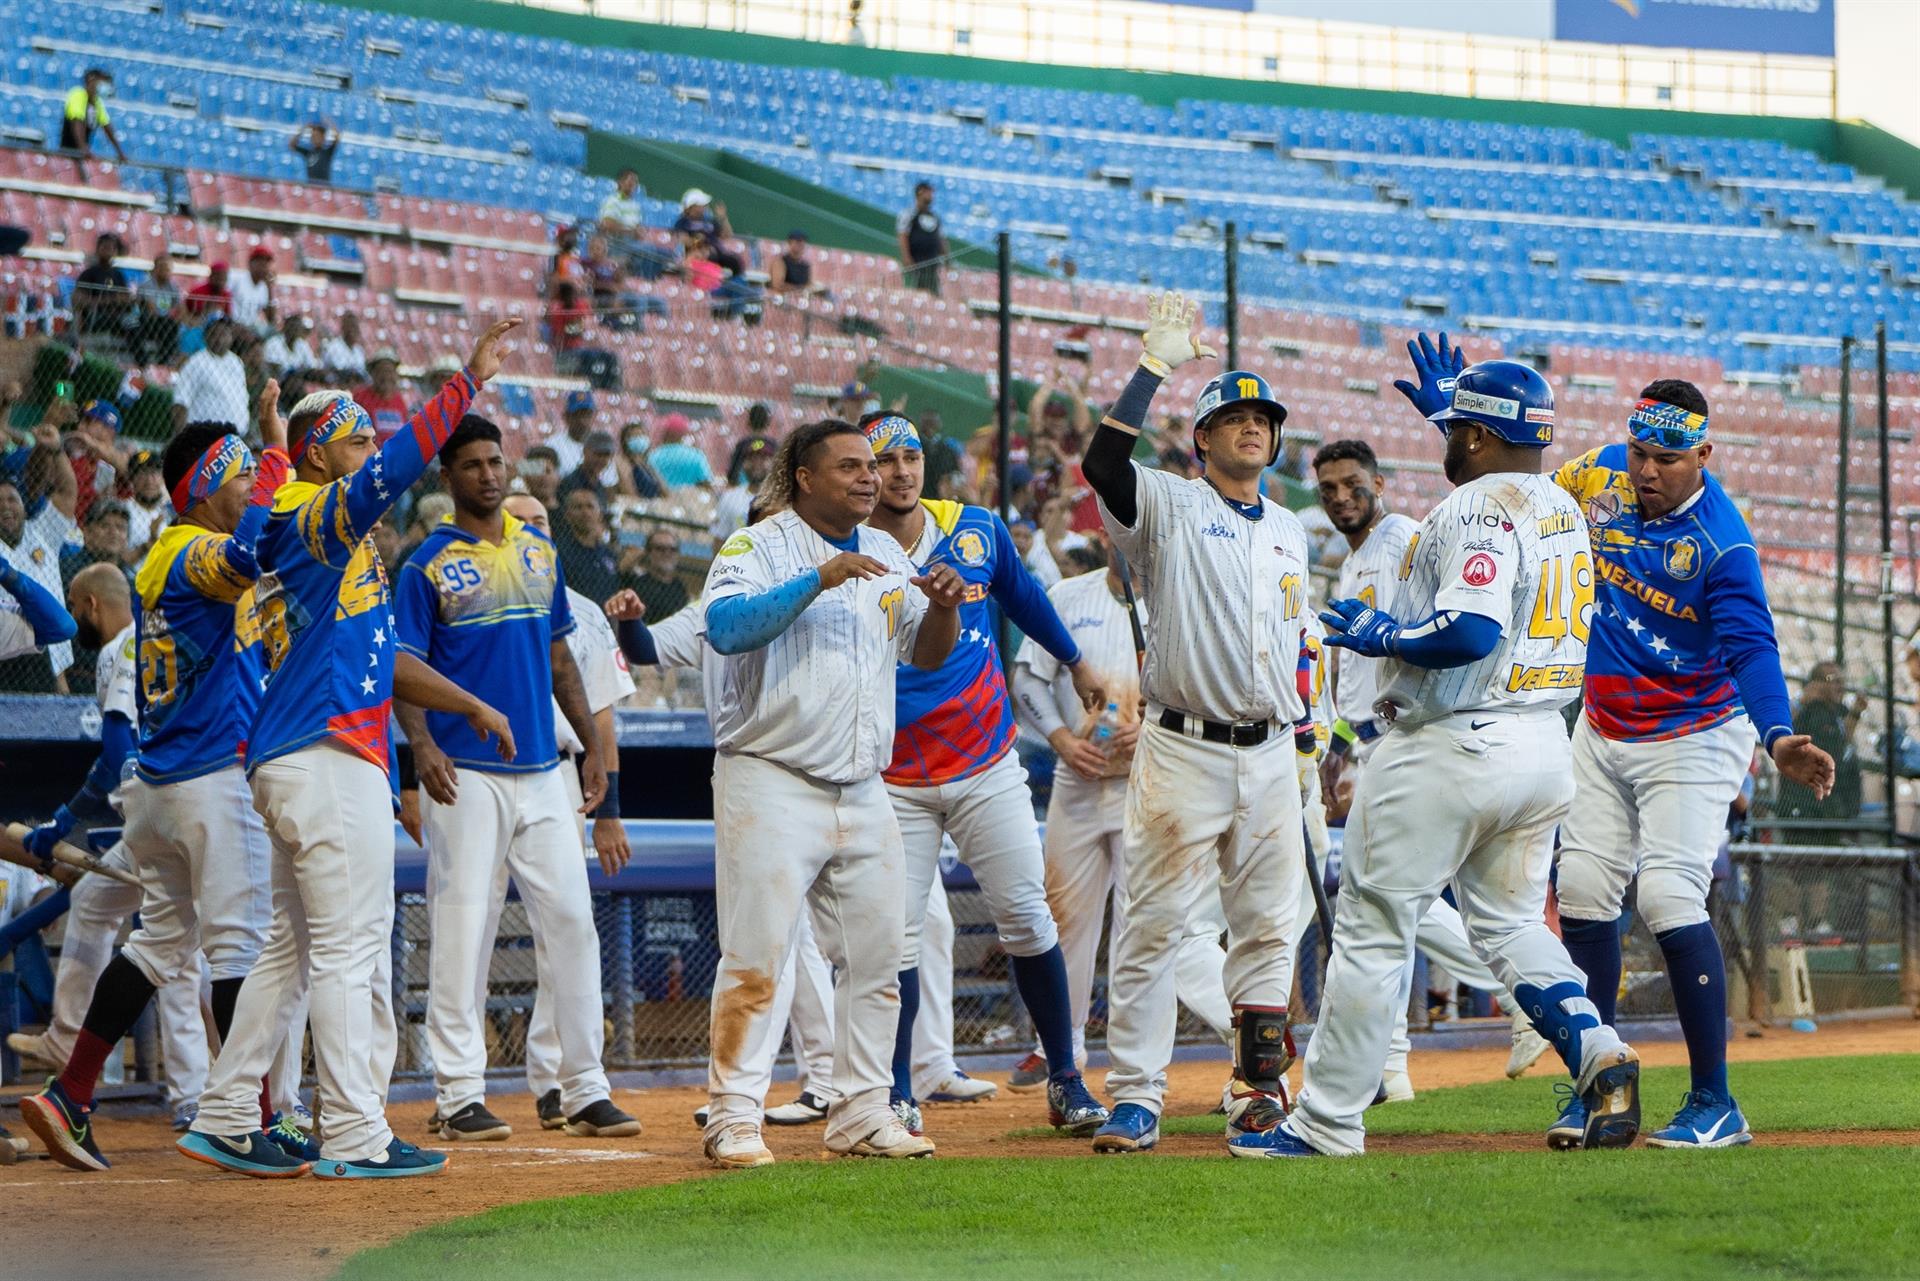 Venezuela blanquea a México y gana su primer choque en la Serie del Caribe